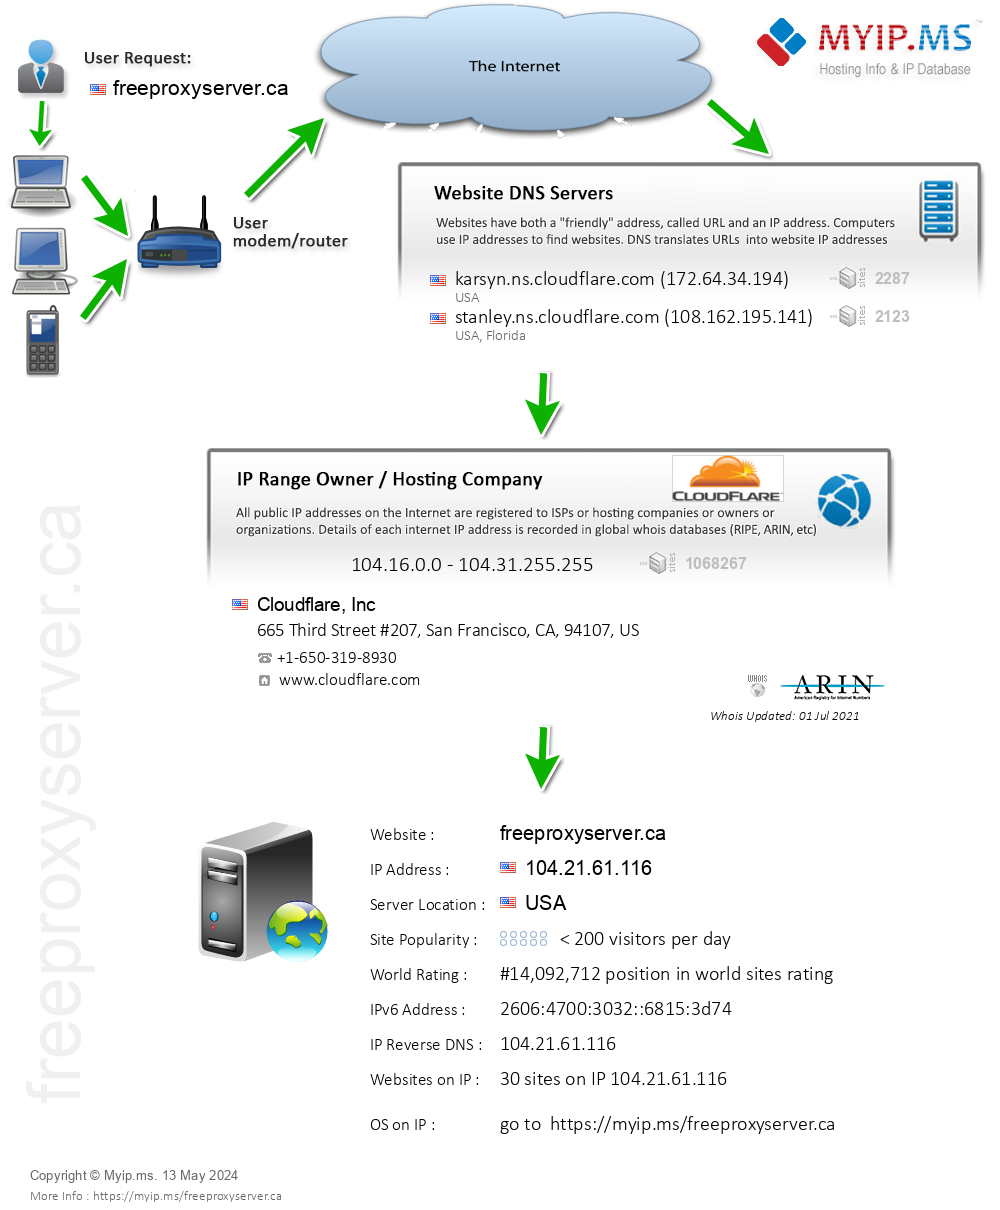 Freeproxyserver.ca - Website Hosting Visual IP Diagram